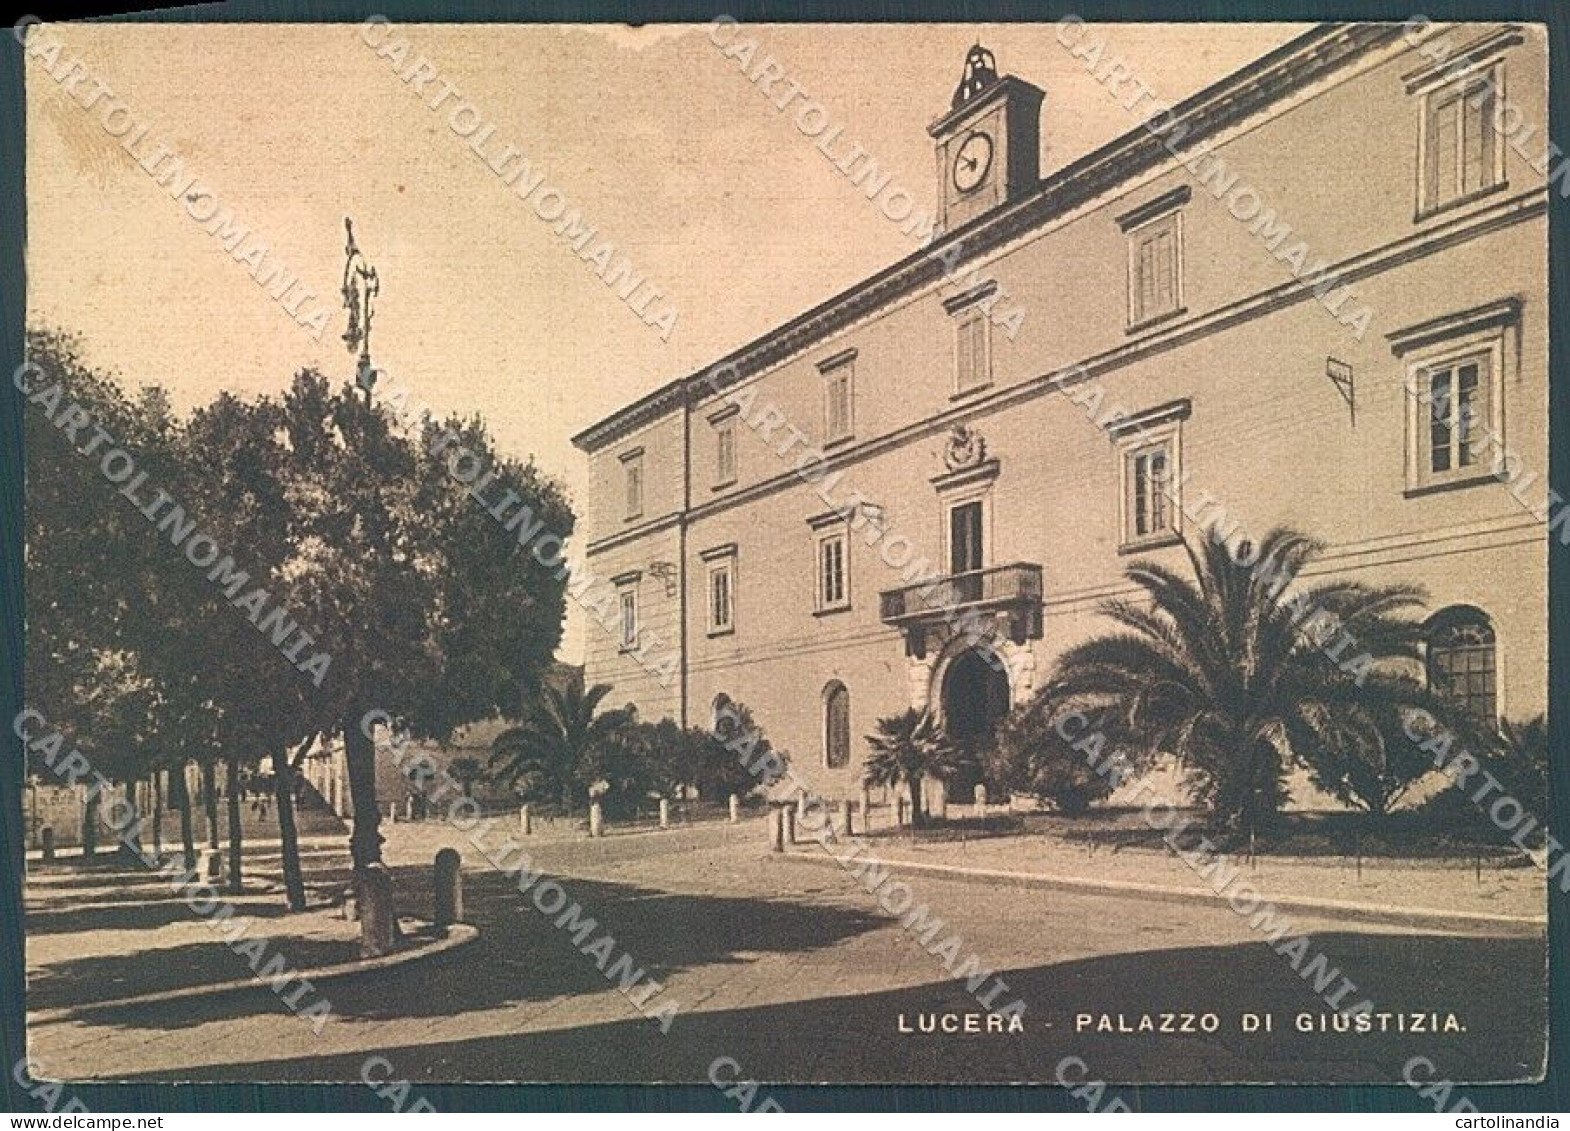 Foggia Lucera Palazzo Di Giustizia FG Cartolina JK5958 - Foggia